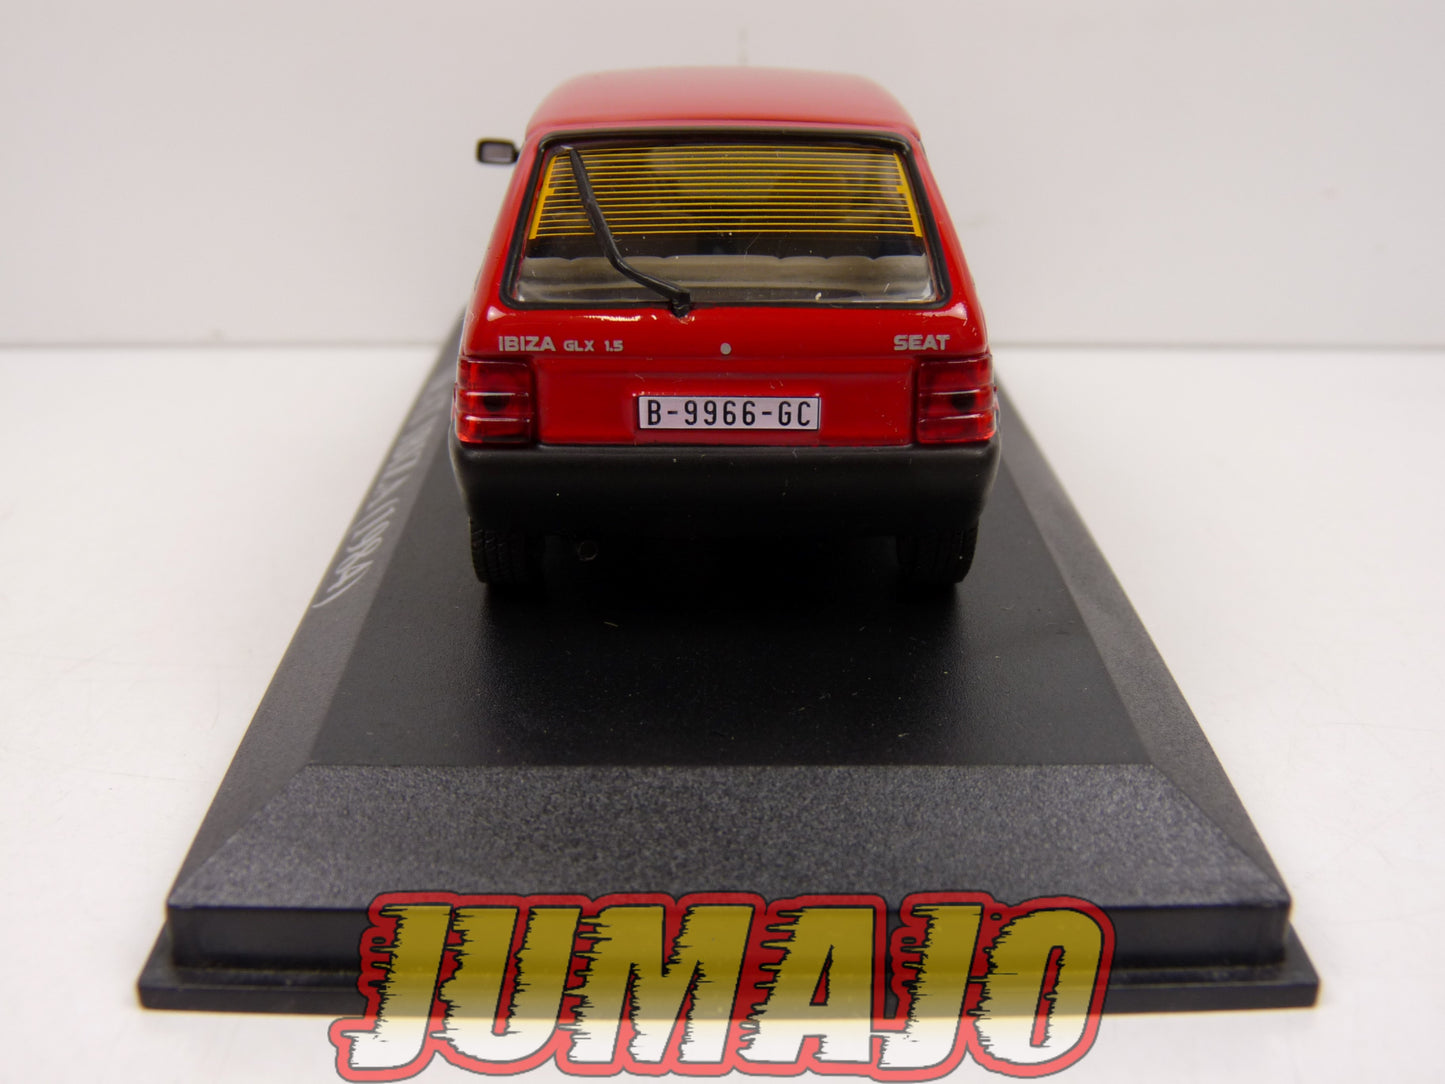 VA25 voiture 1/43 IXO altaya : SEAT Ibiza 1984